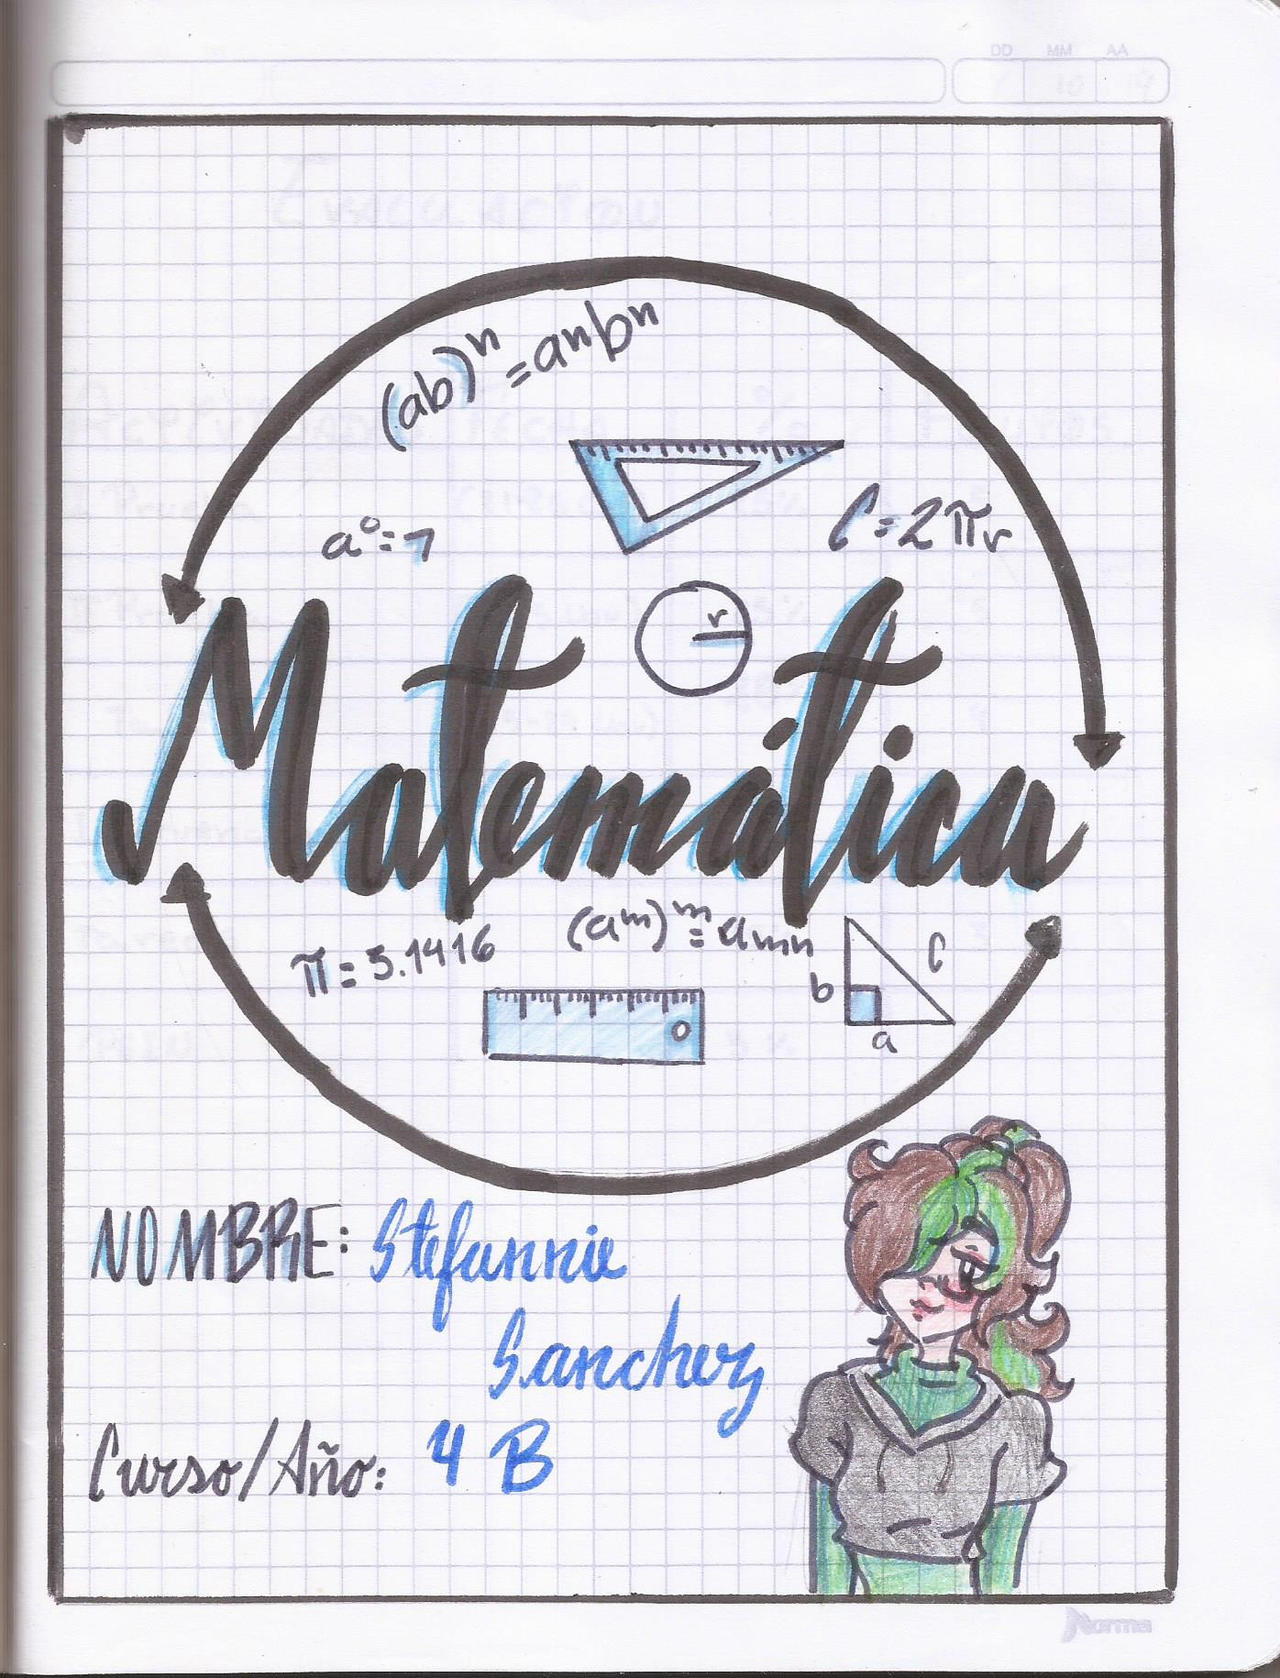 Portada de Matematica by stefannie2 on DeviantArt